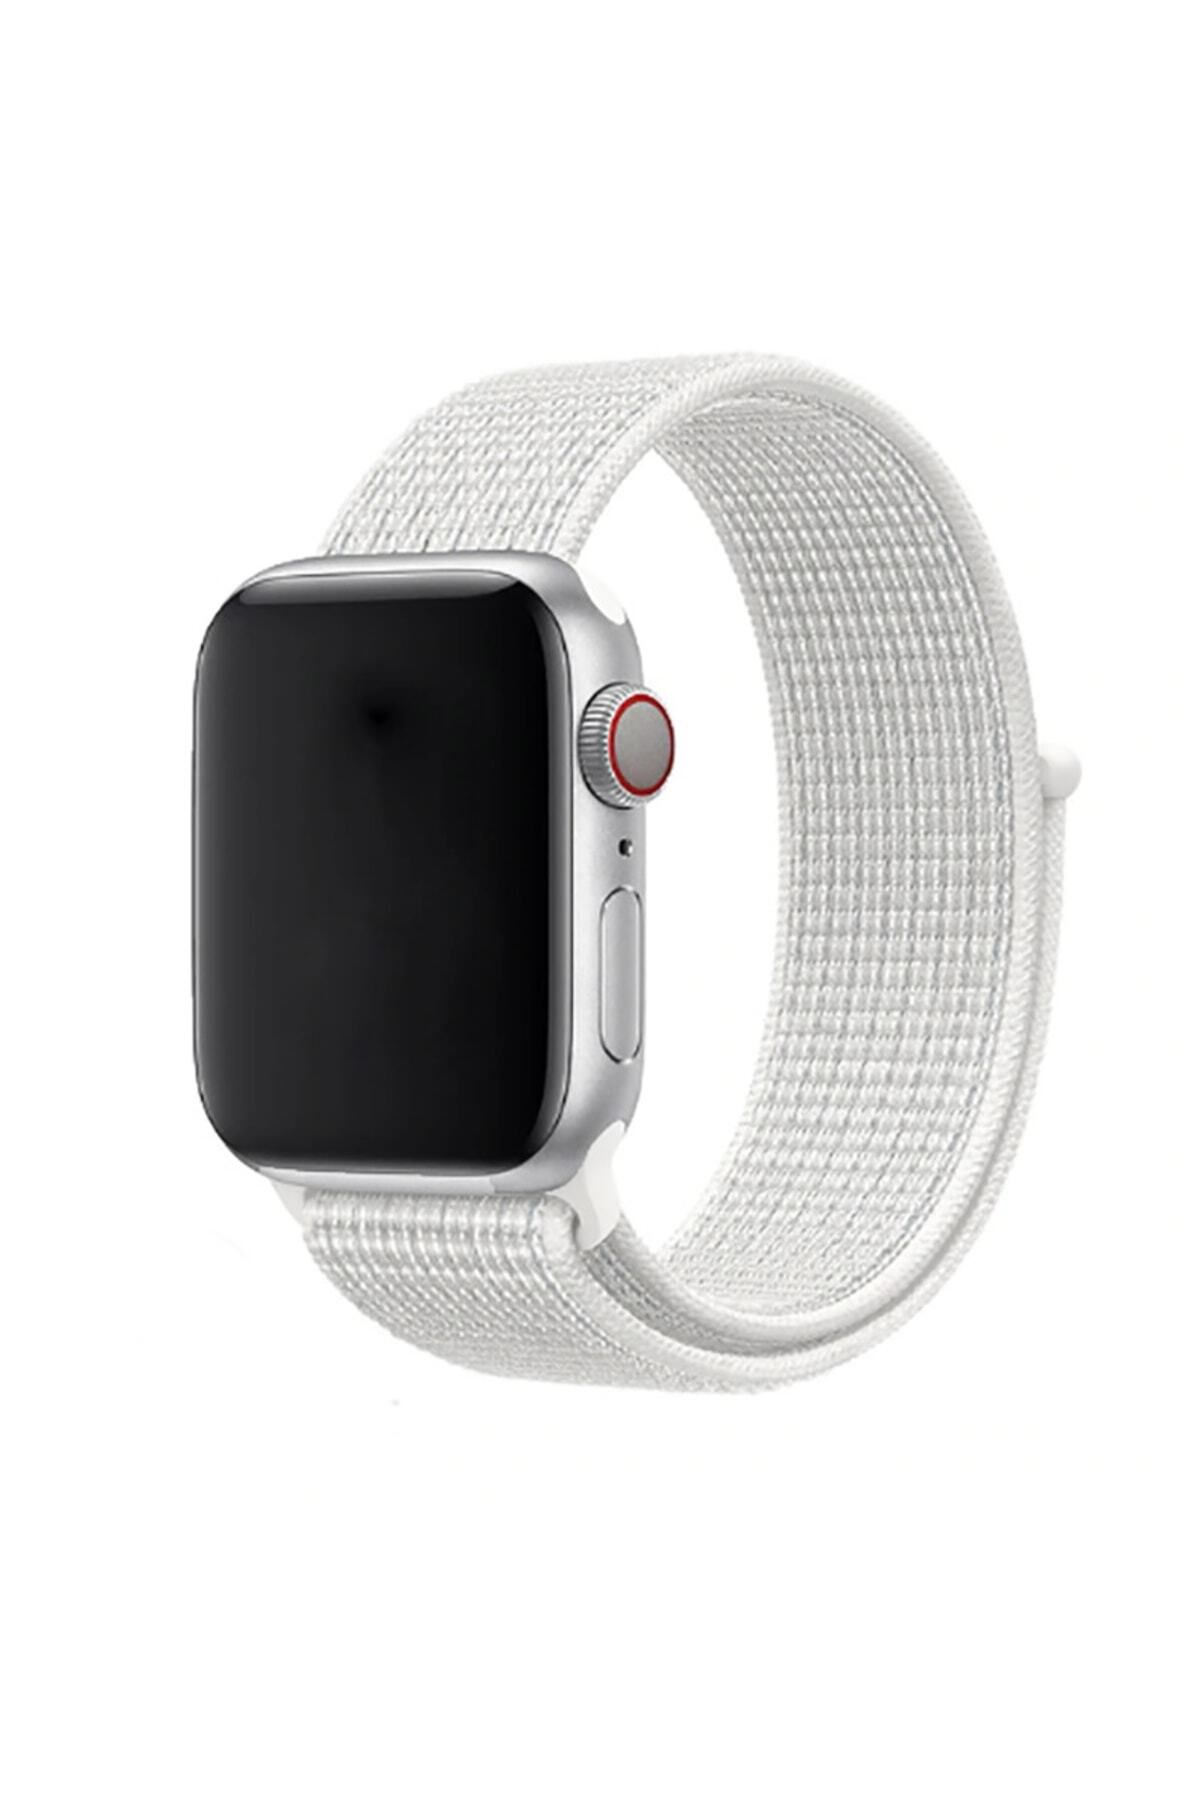 hzrteknoloji Apple Watch 44mm Uyumlu Krd-03 Hasır Kordon Akıllı Saat Bileklik Kayışı Kordonu